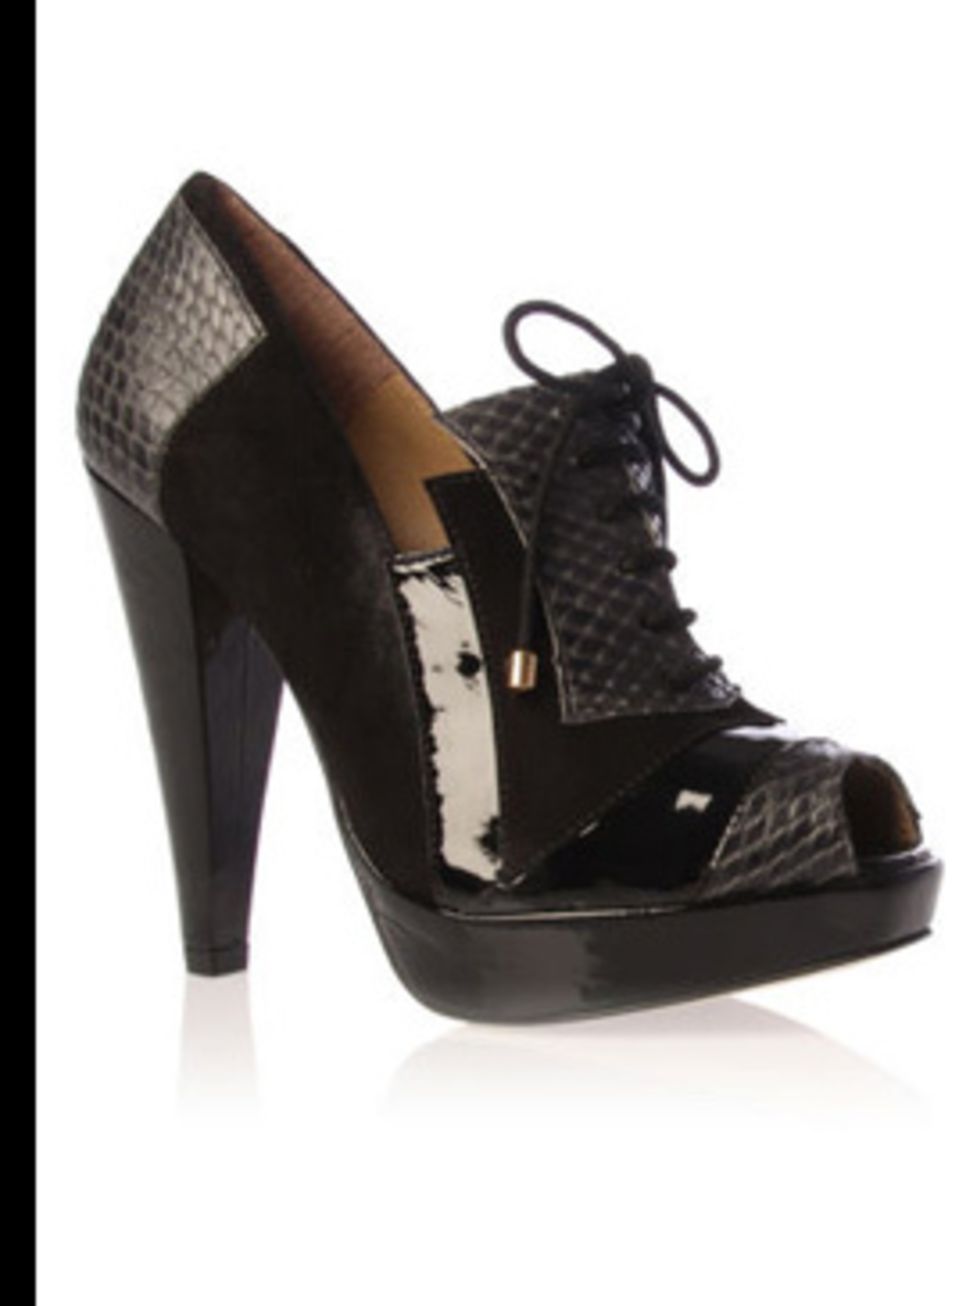 <p>shoes, £140.00 by <a href="http://www.kurtgeiger.com/online-shop/75763-kg-cecilia">KG</a></p>